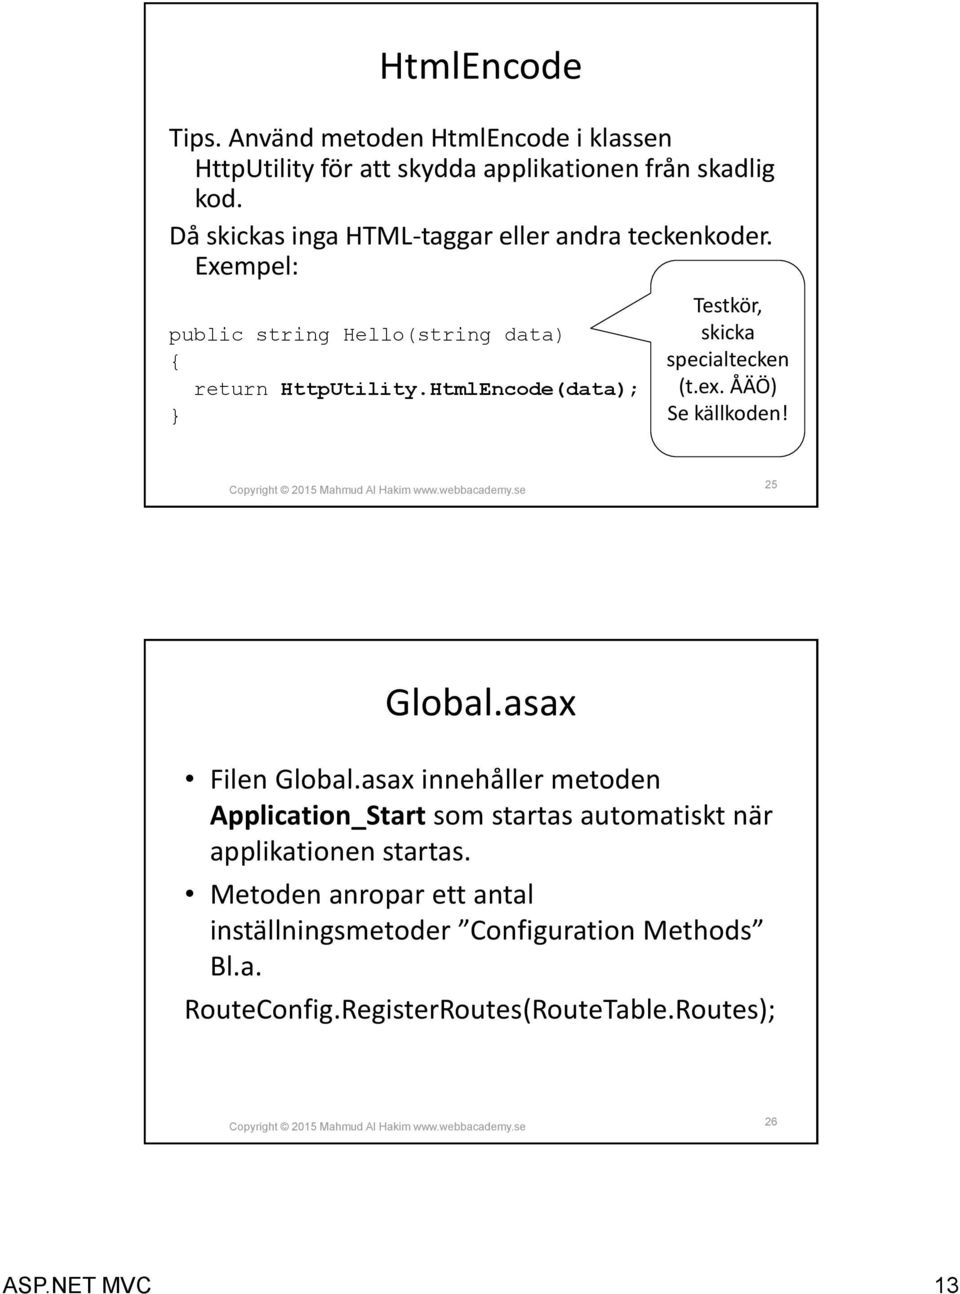 HtmlEncode(data); Testkör, skicka specialtecken (t.ex. ÅÄÖ) Se källkoden! 25 Global.asax Filen Global.